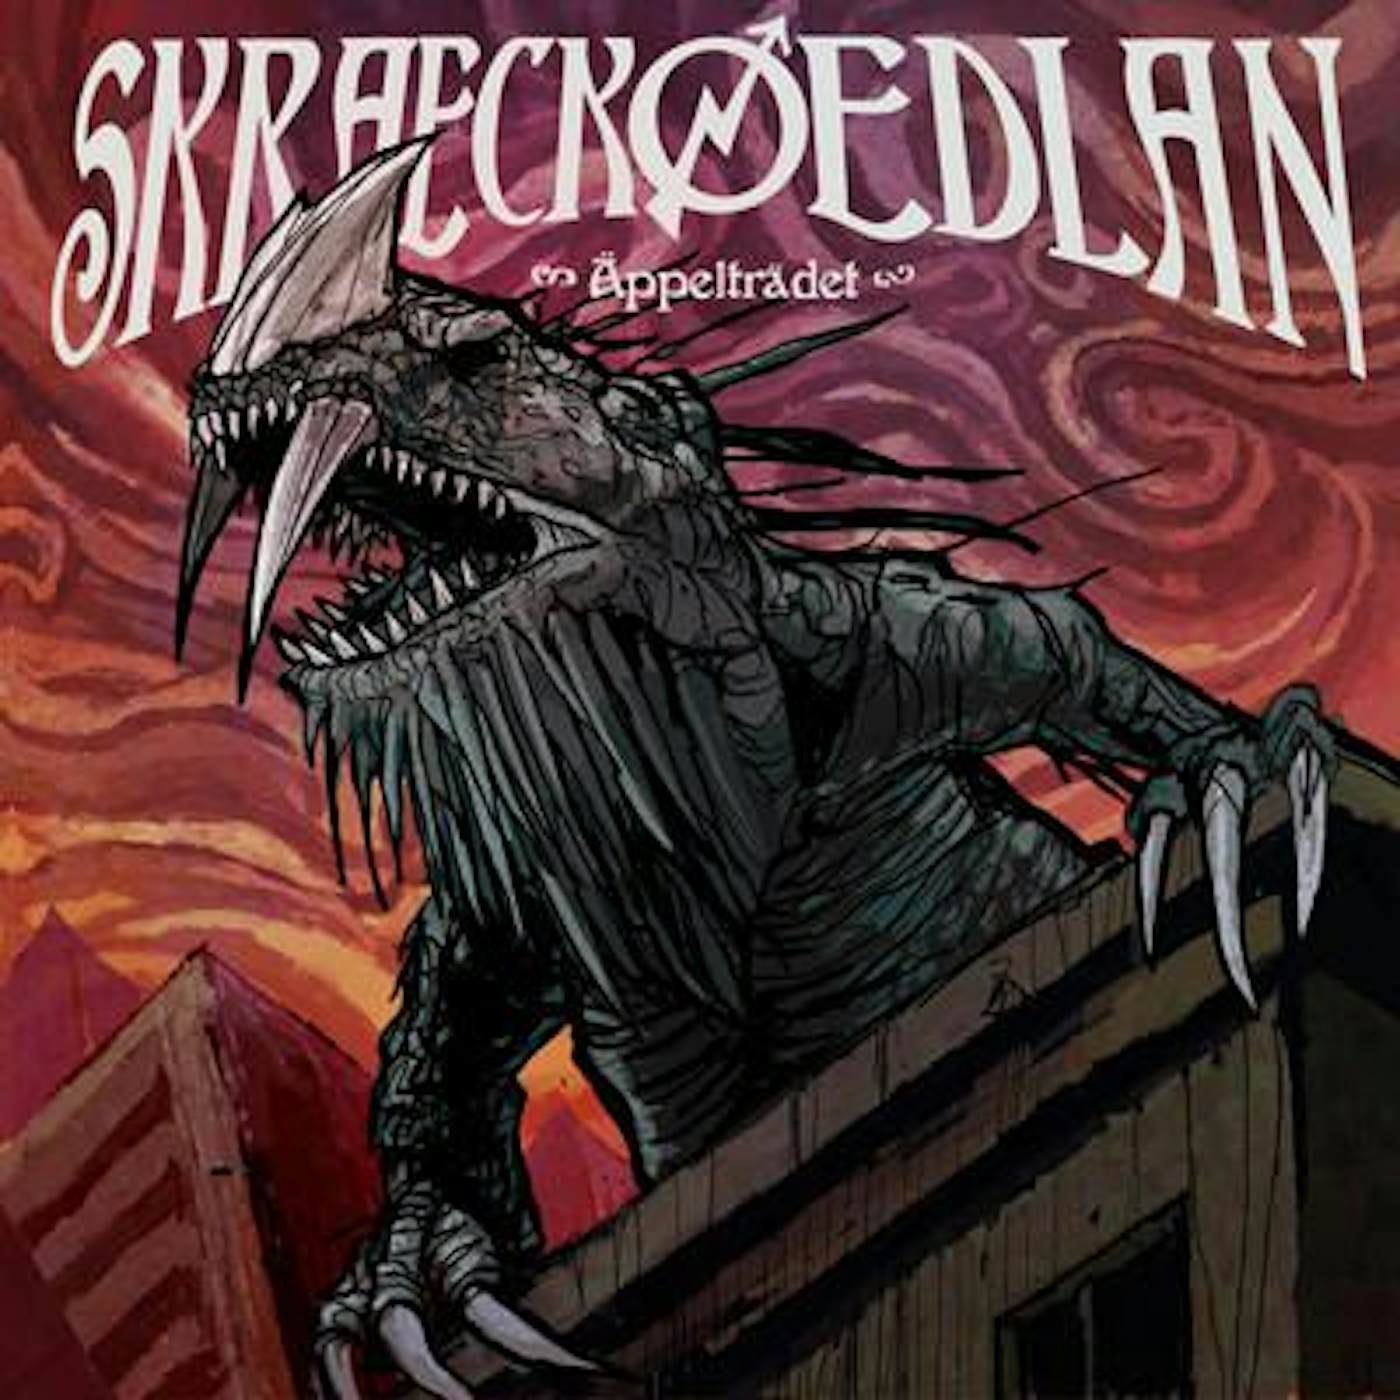 Skraeckoedlan Appeltradet Vinyl Record